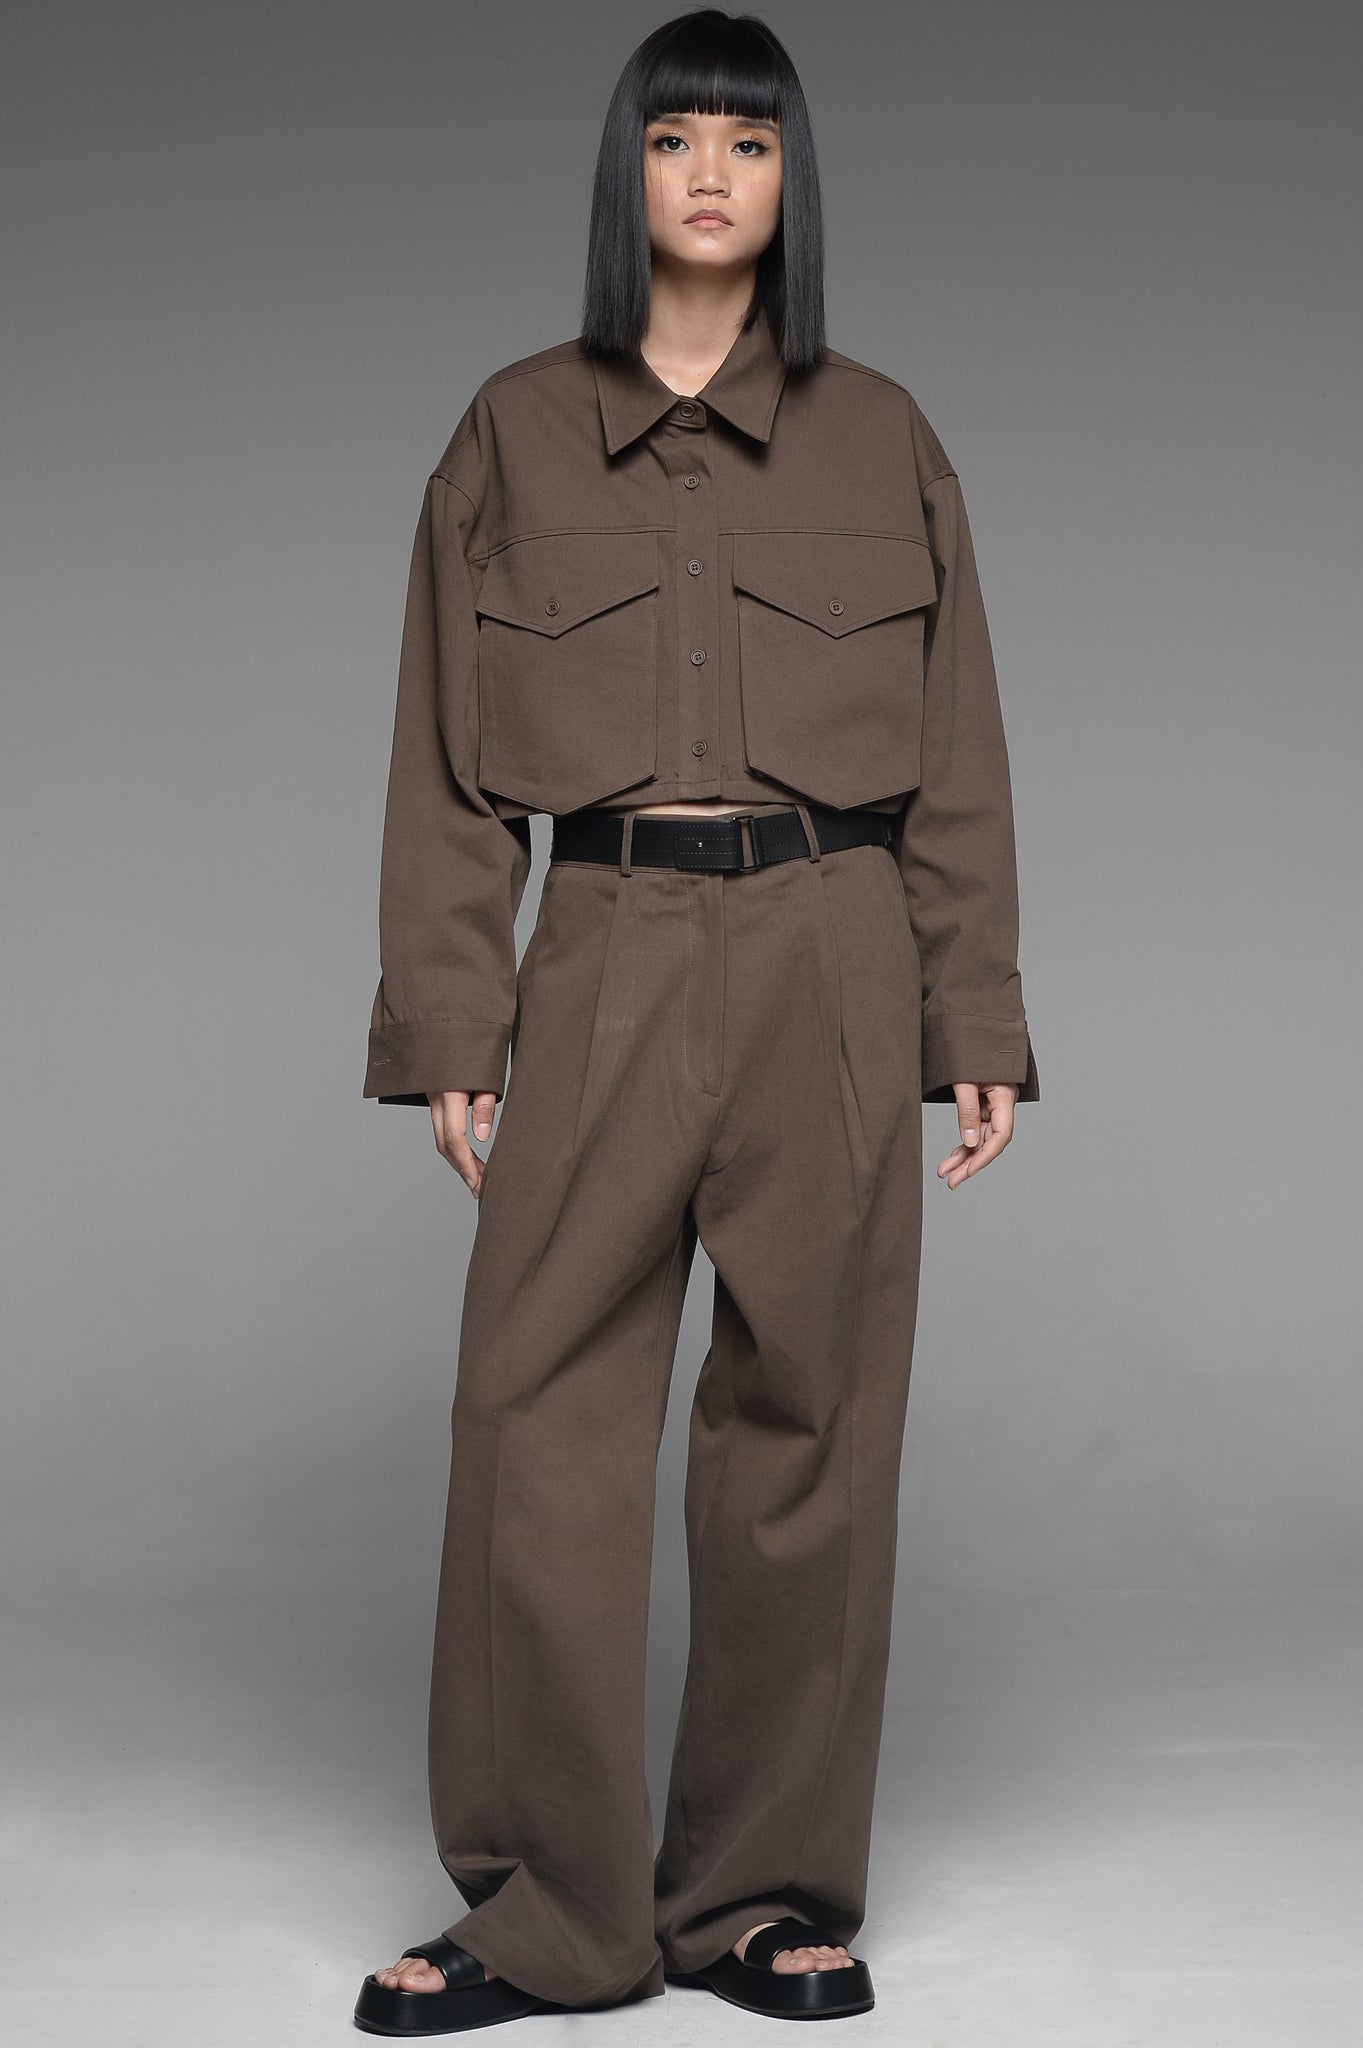 Walnut Brown Pocket Shirt and Trouser Match Set